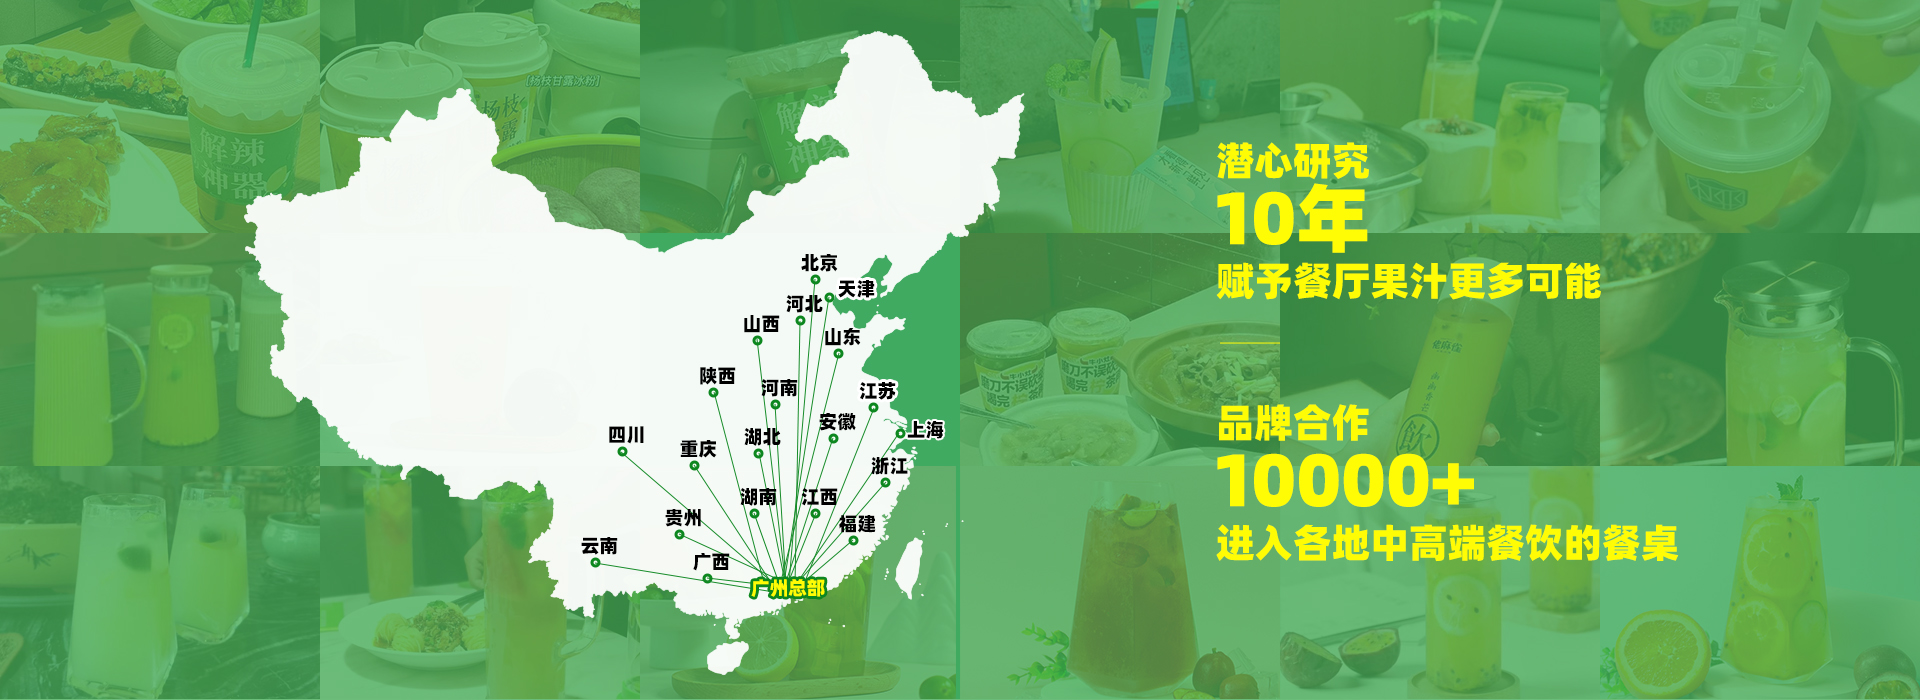 广州市中和食品科技有限公司